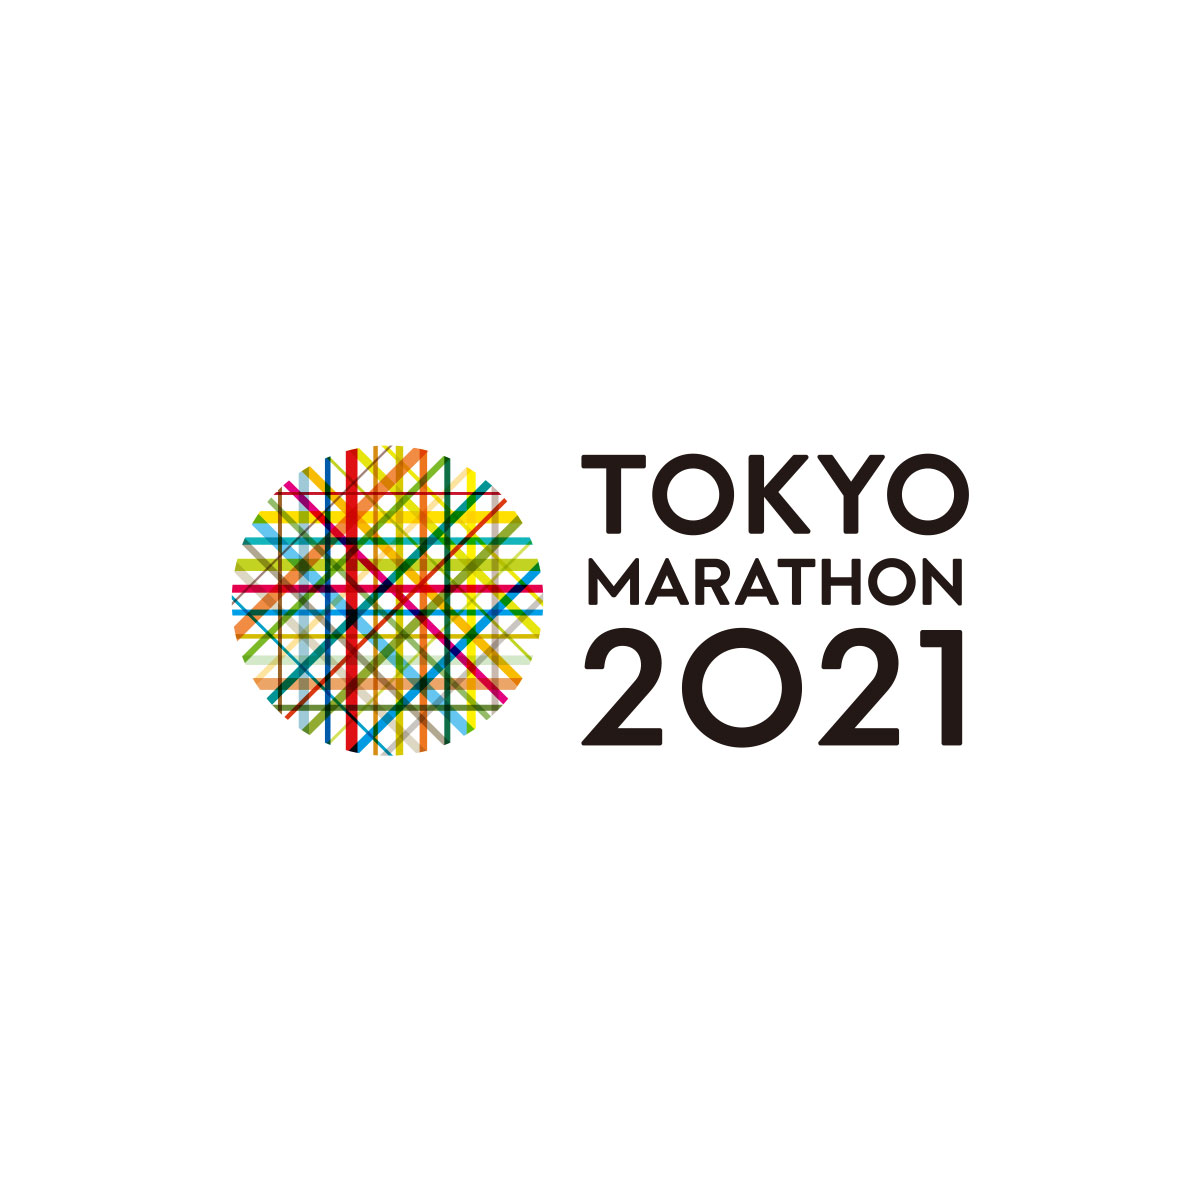 ナビ 2021 応援 東京 マラソン 東京マラソンの応援 この3つの駅で降りて5回応援する